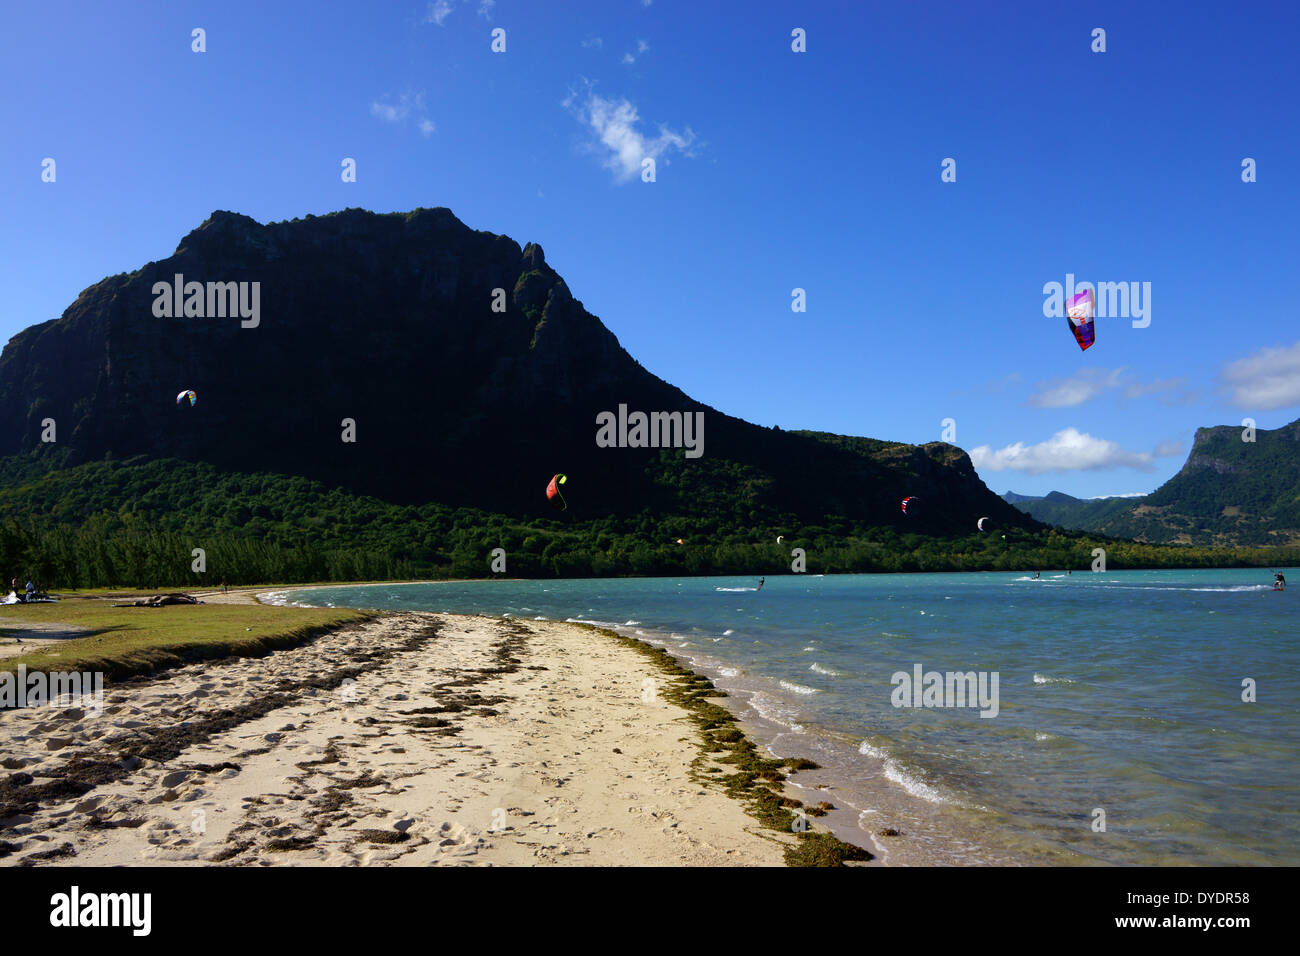 Kite surfers at Le Morne Brabant Peninsula, Island Mauritius Stock Photo